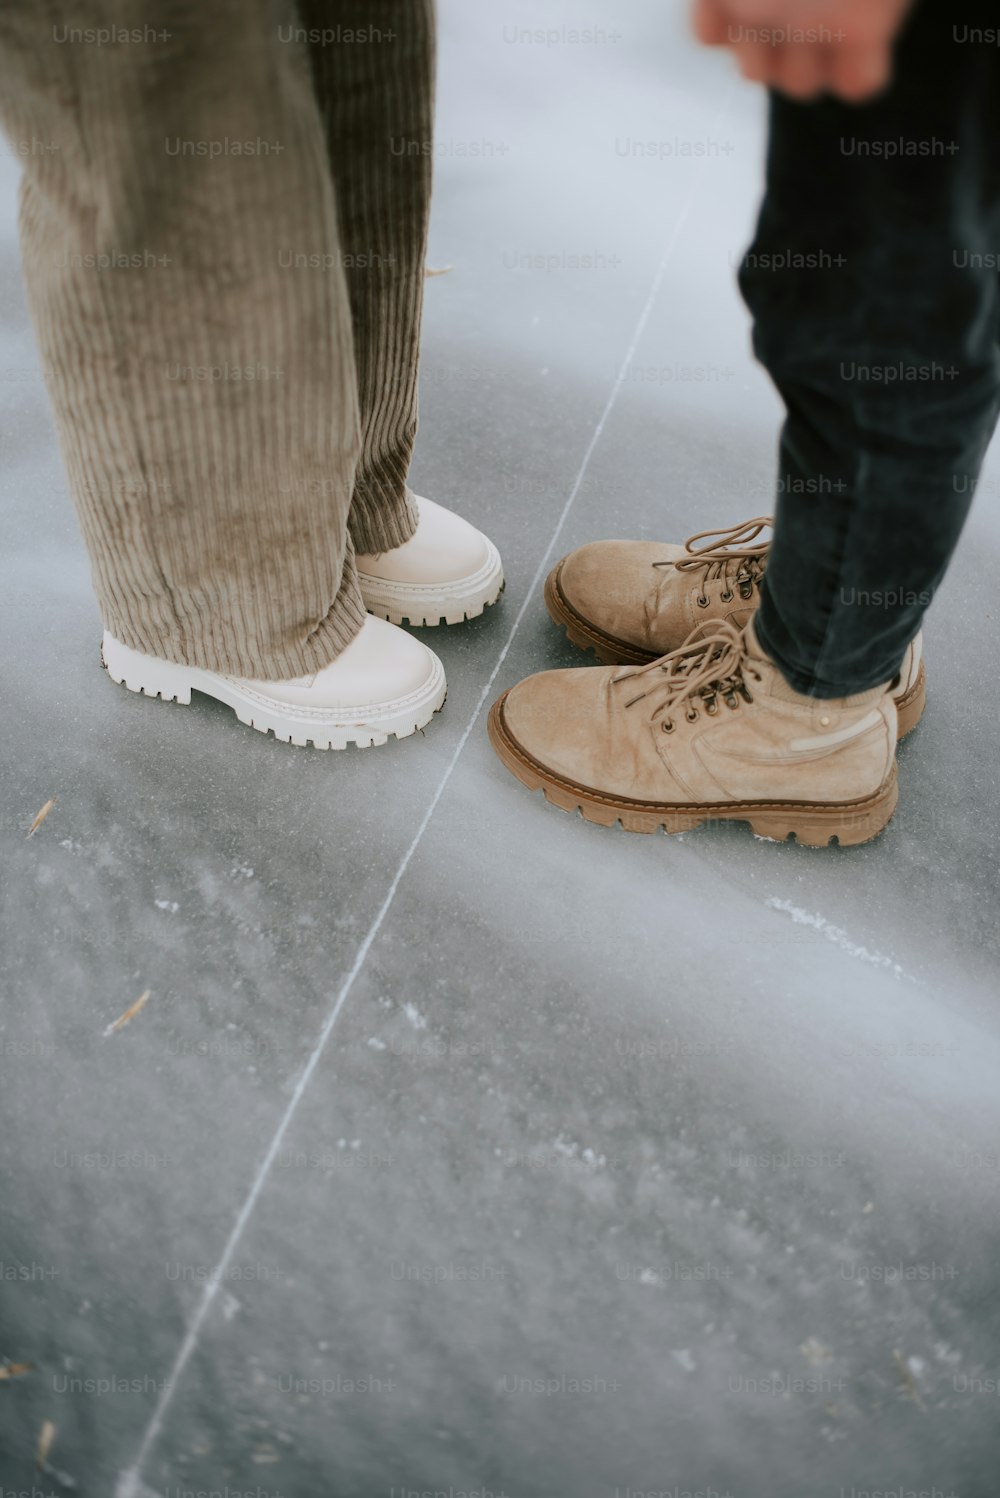 Una persona parada junto a otra persona con zapatos marrones